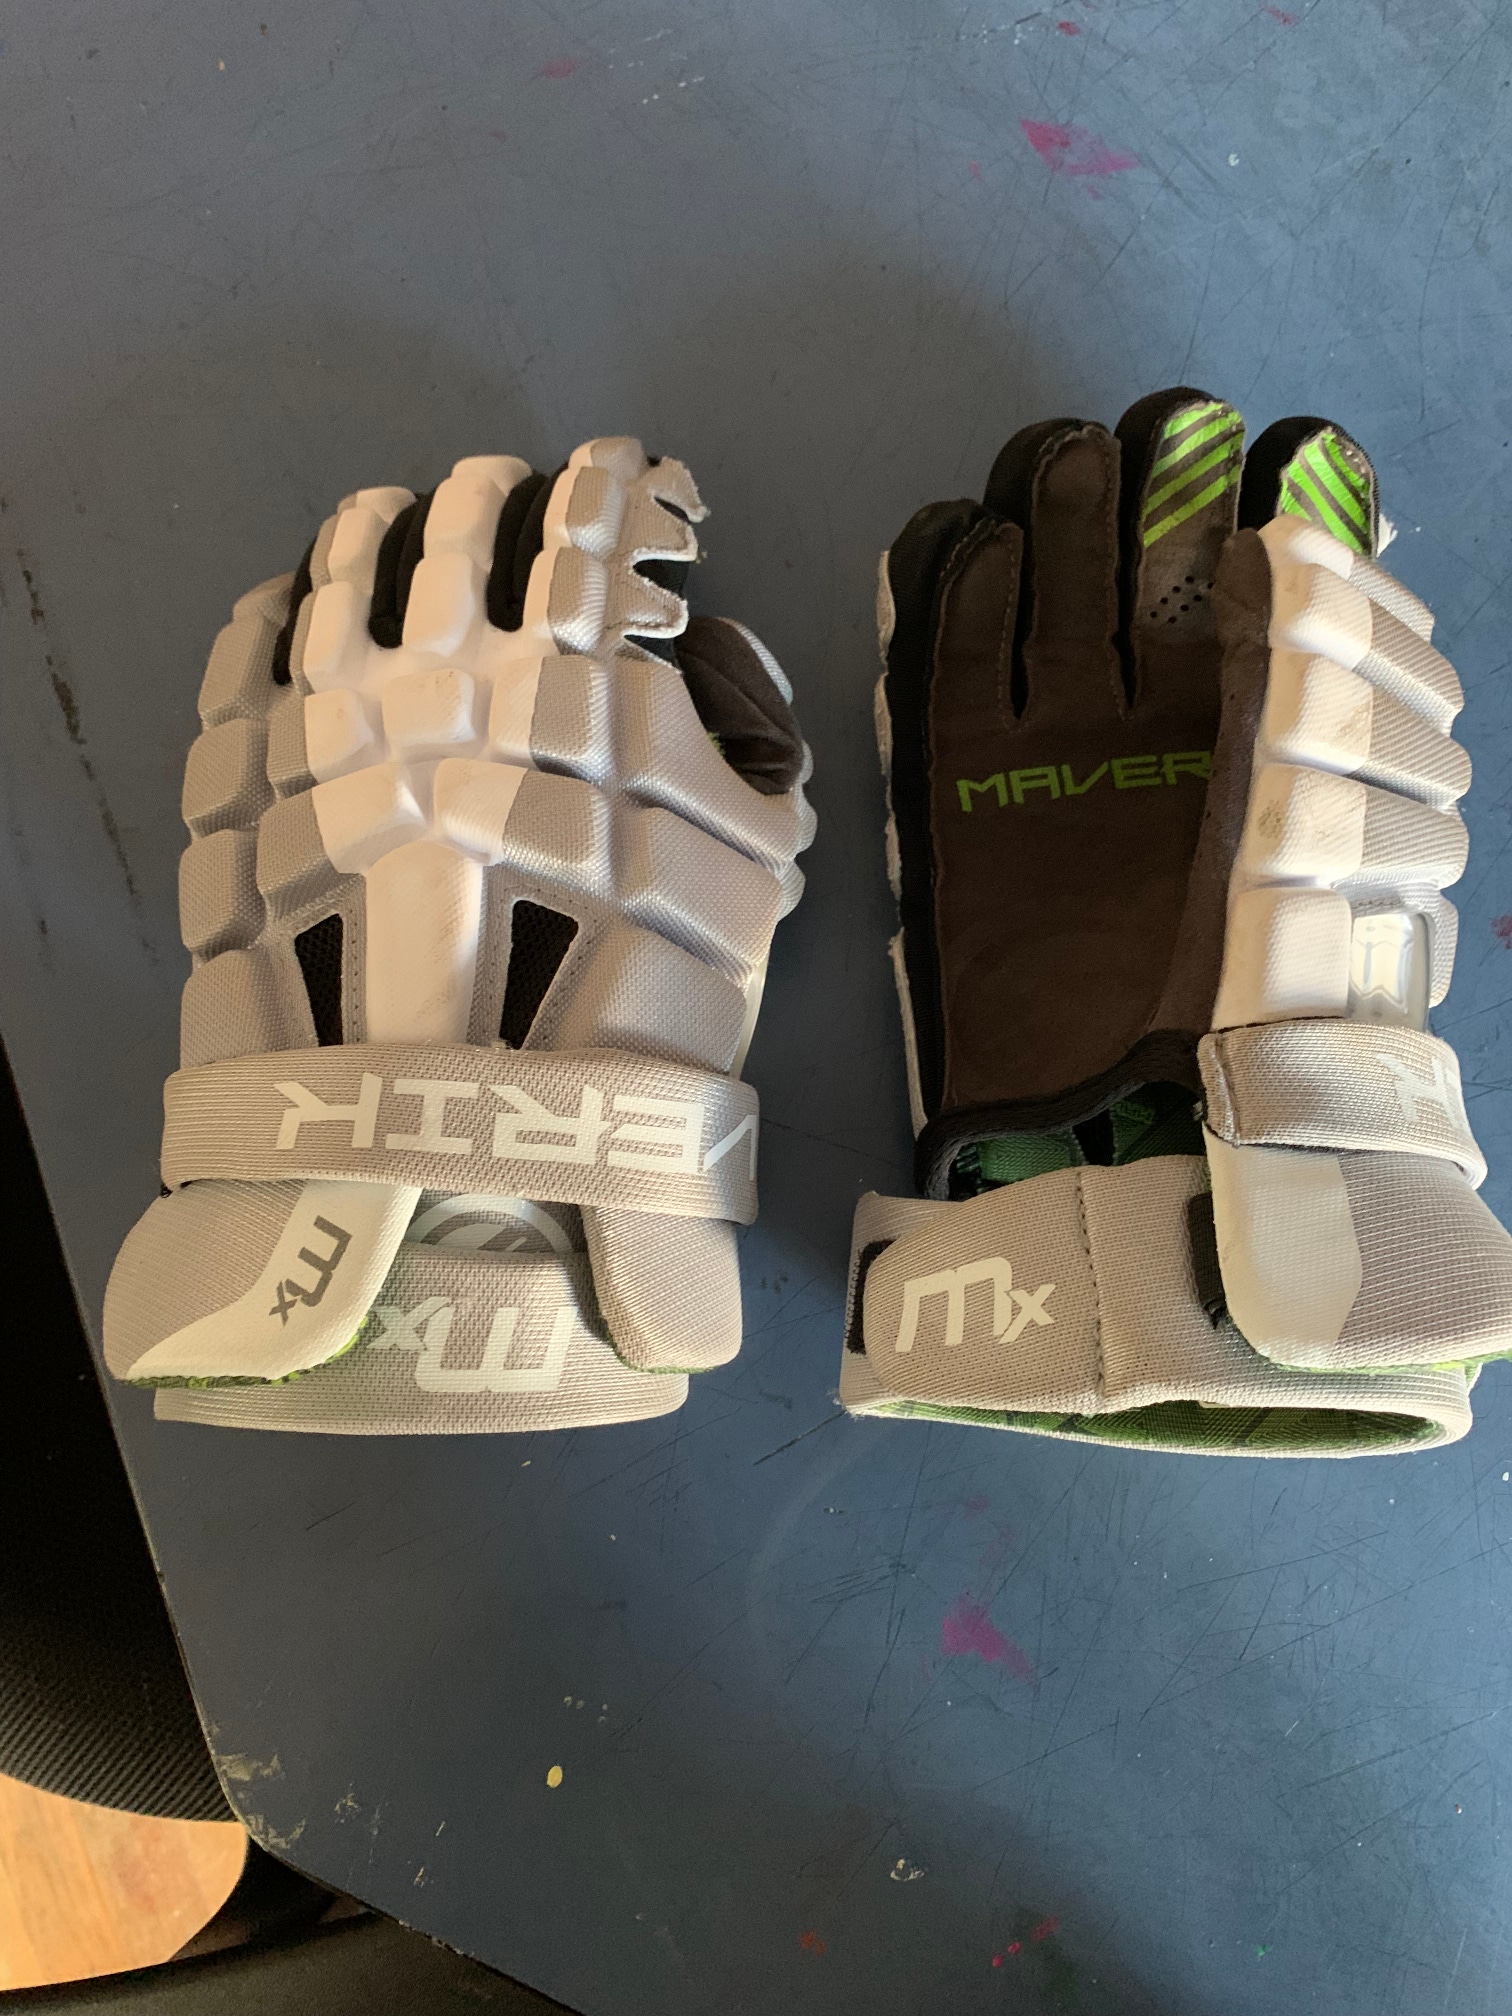 Used Maverik MX Lacrosse Gloves 12"